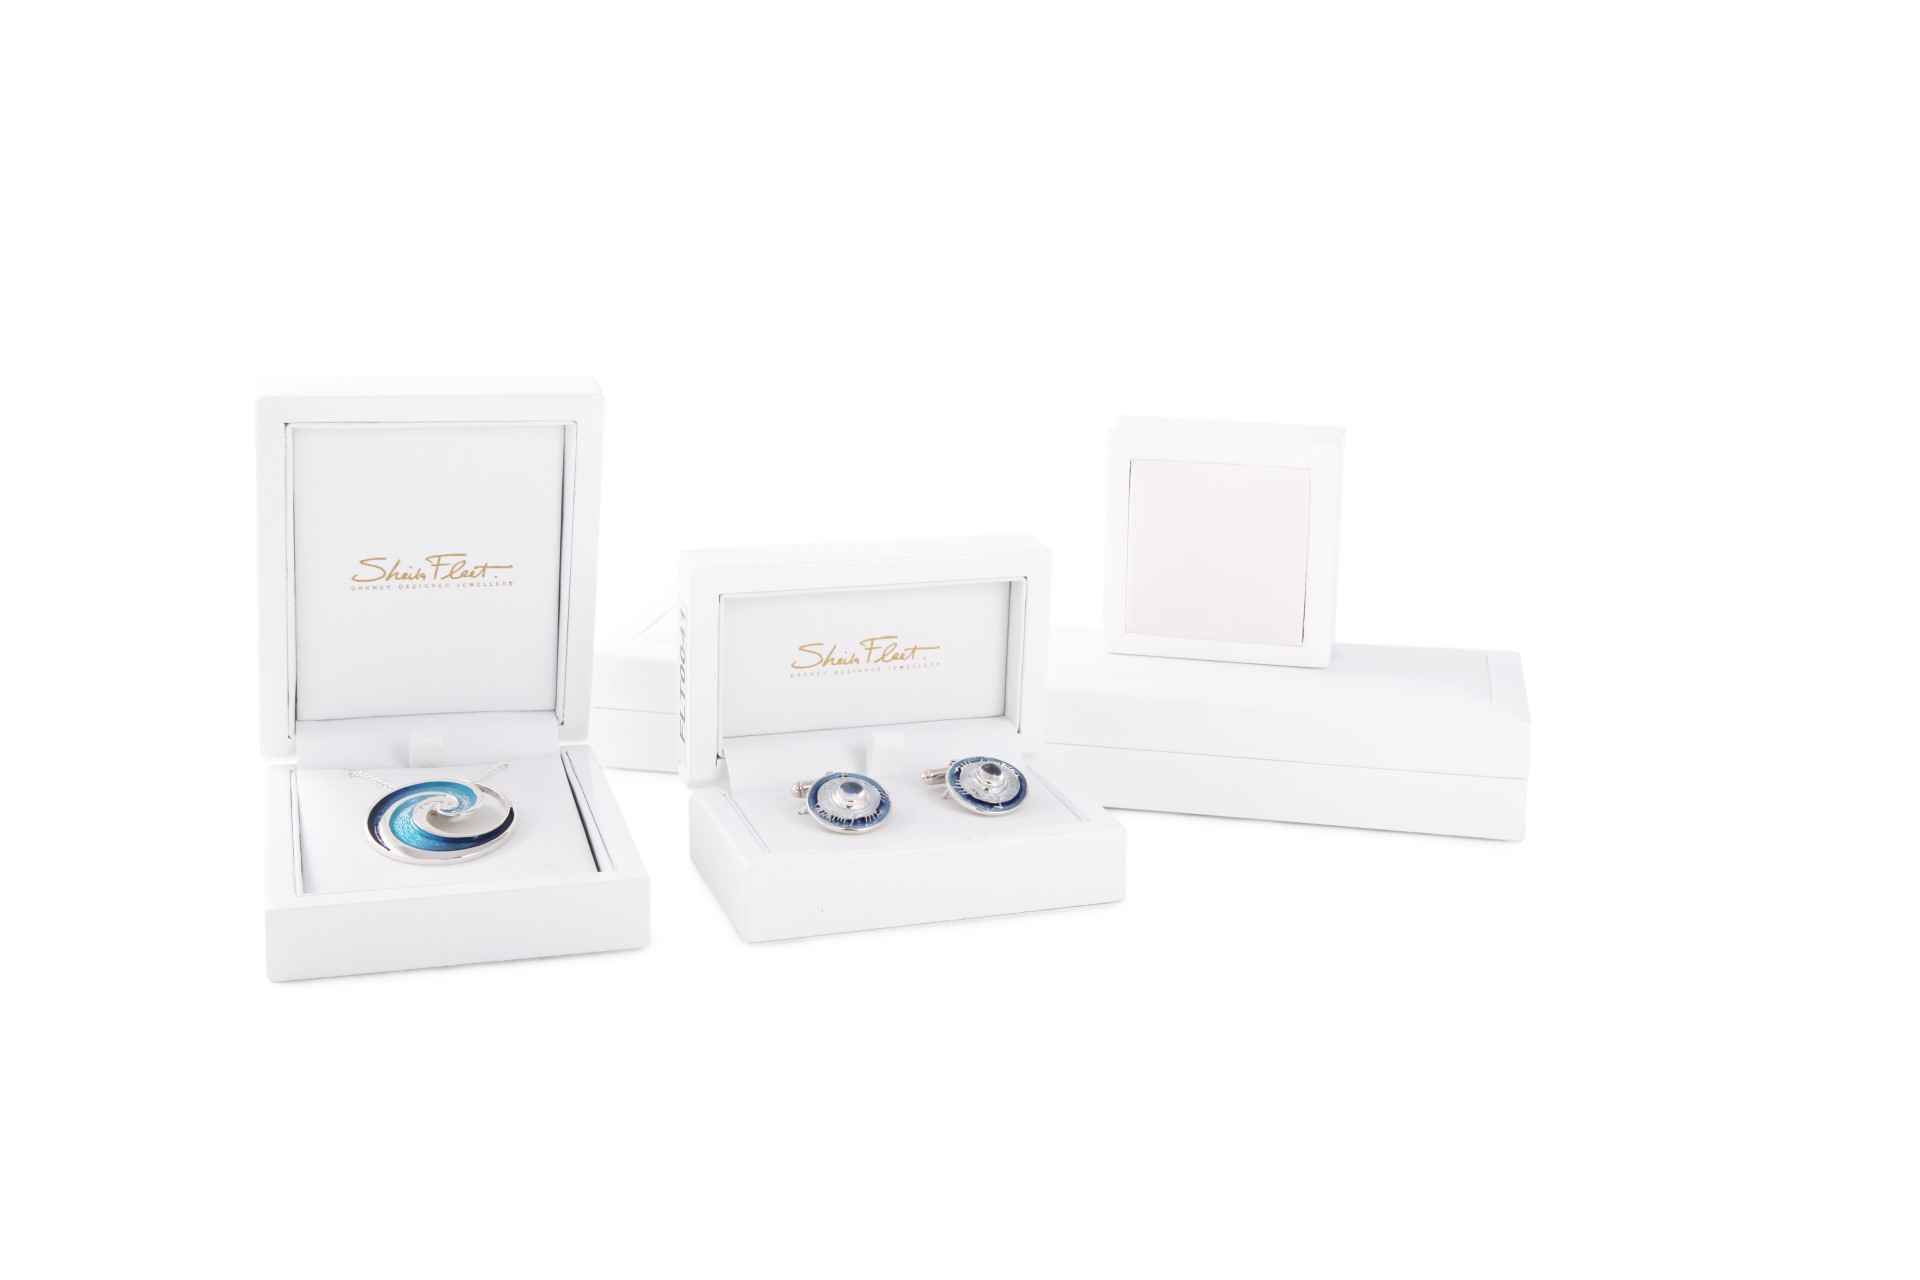 Sheila Fleet Jewellery Packaging